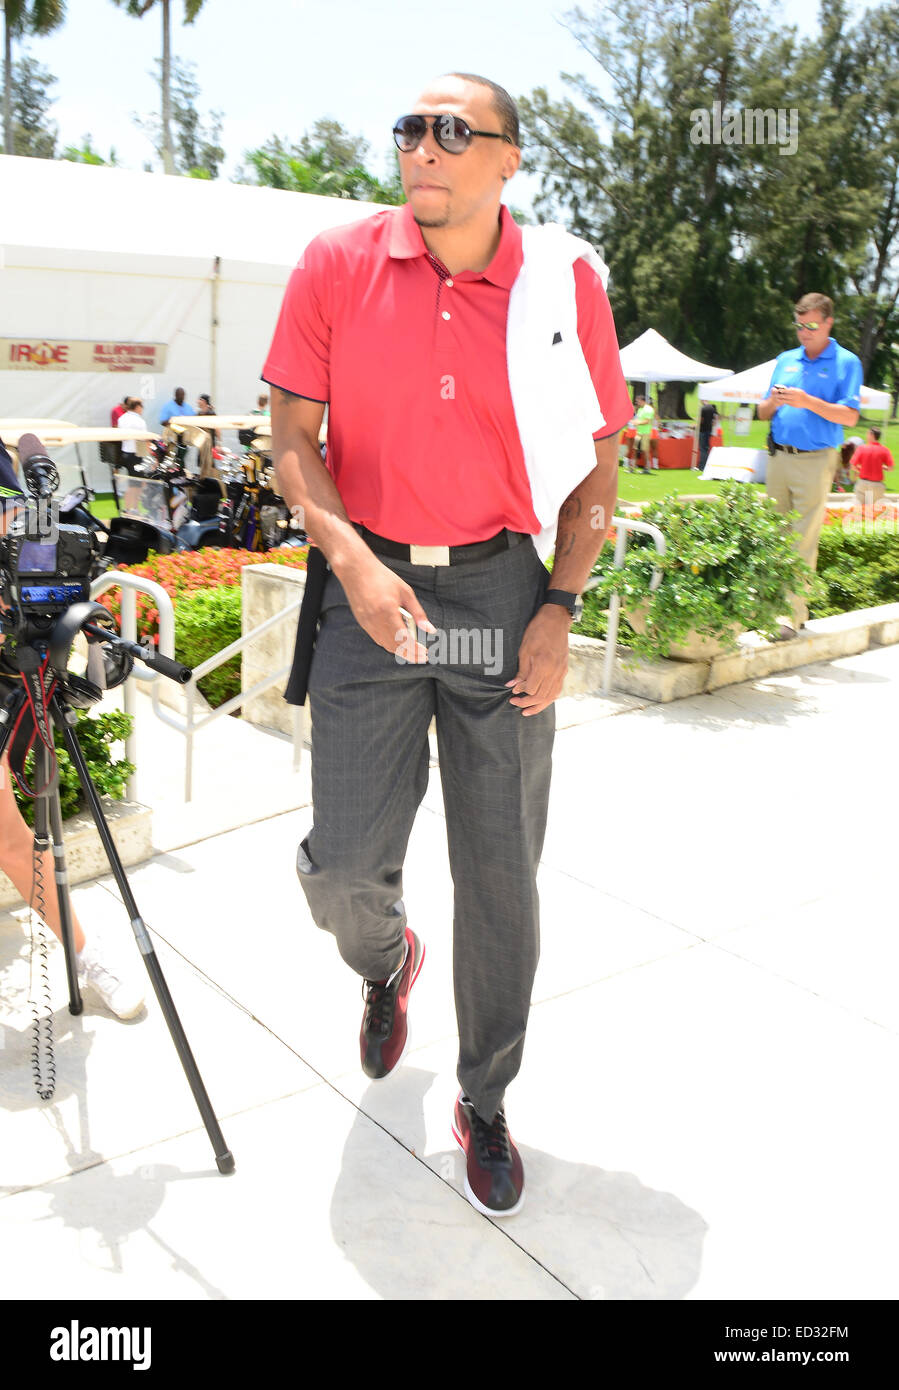 10. Jahrestagung Irie Wochenende - Celebrity Golf-Turnier mit: Shawn Marion wo: Miami Beach, Florida, Vereinigte Staaten, wann: 20. Juni 2014 Stockfoto